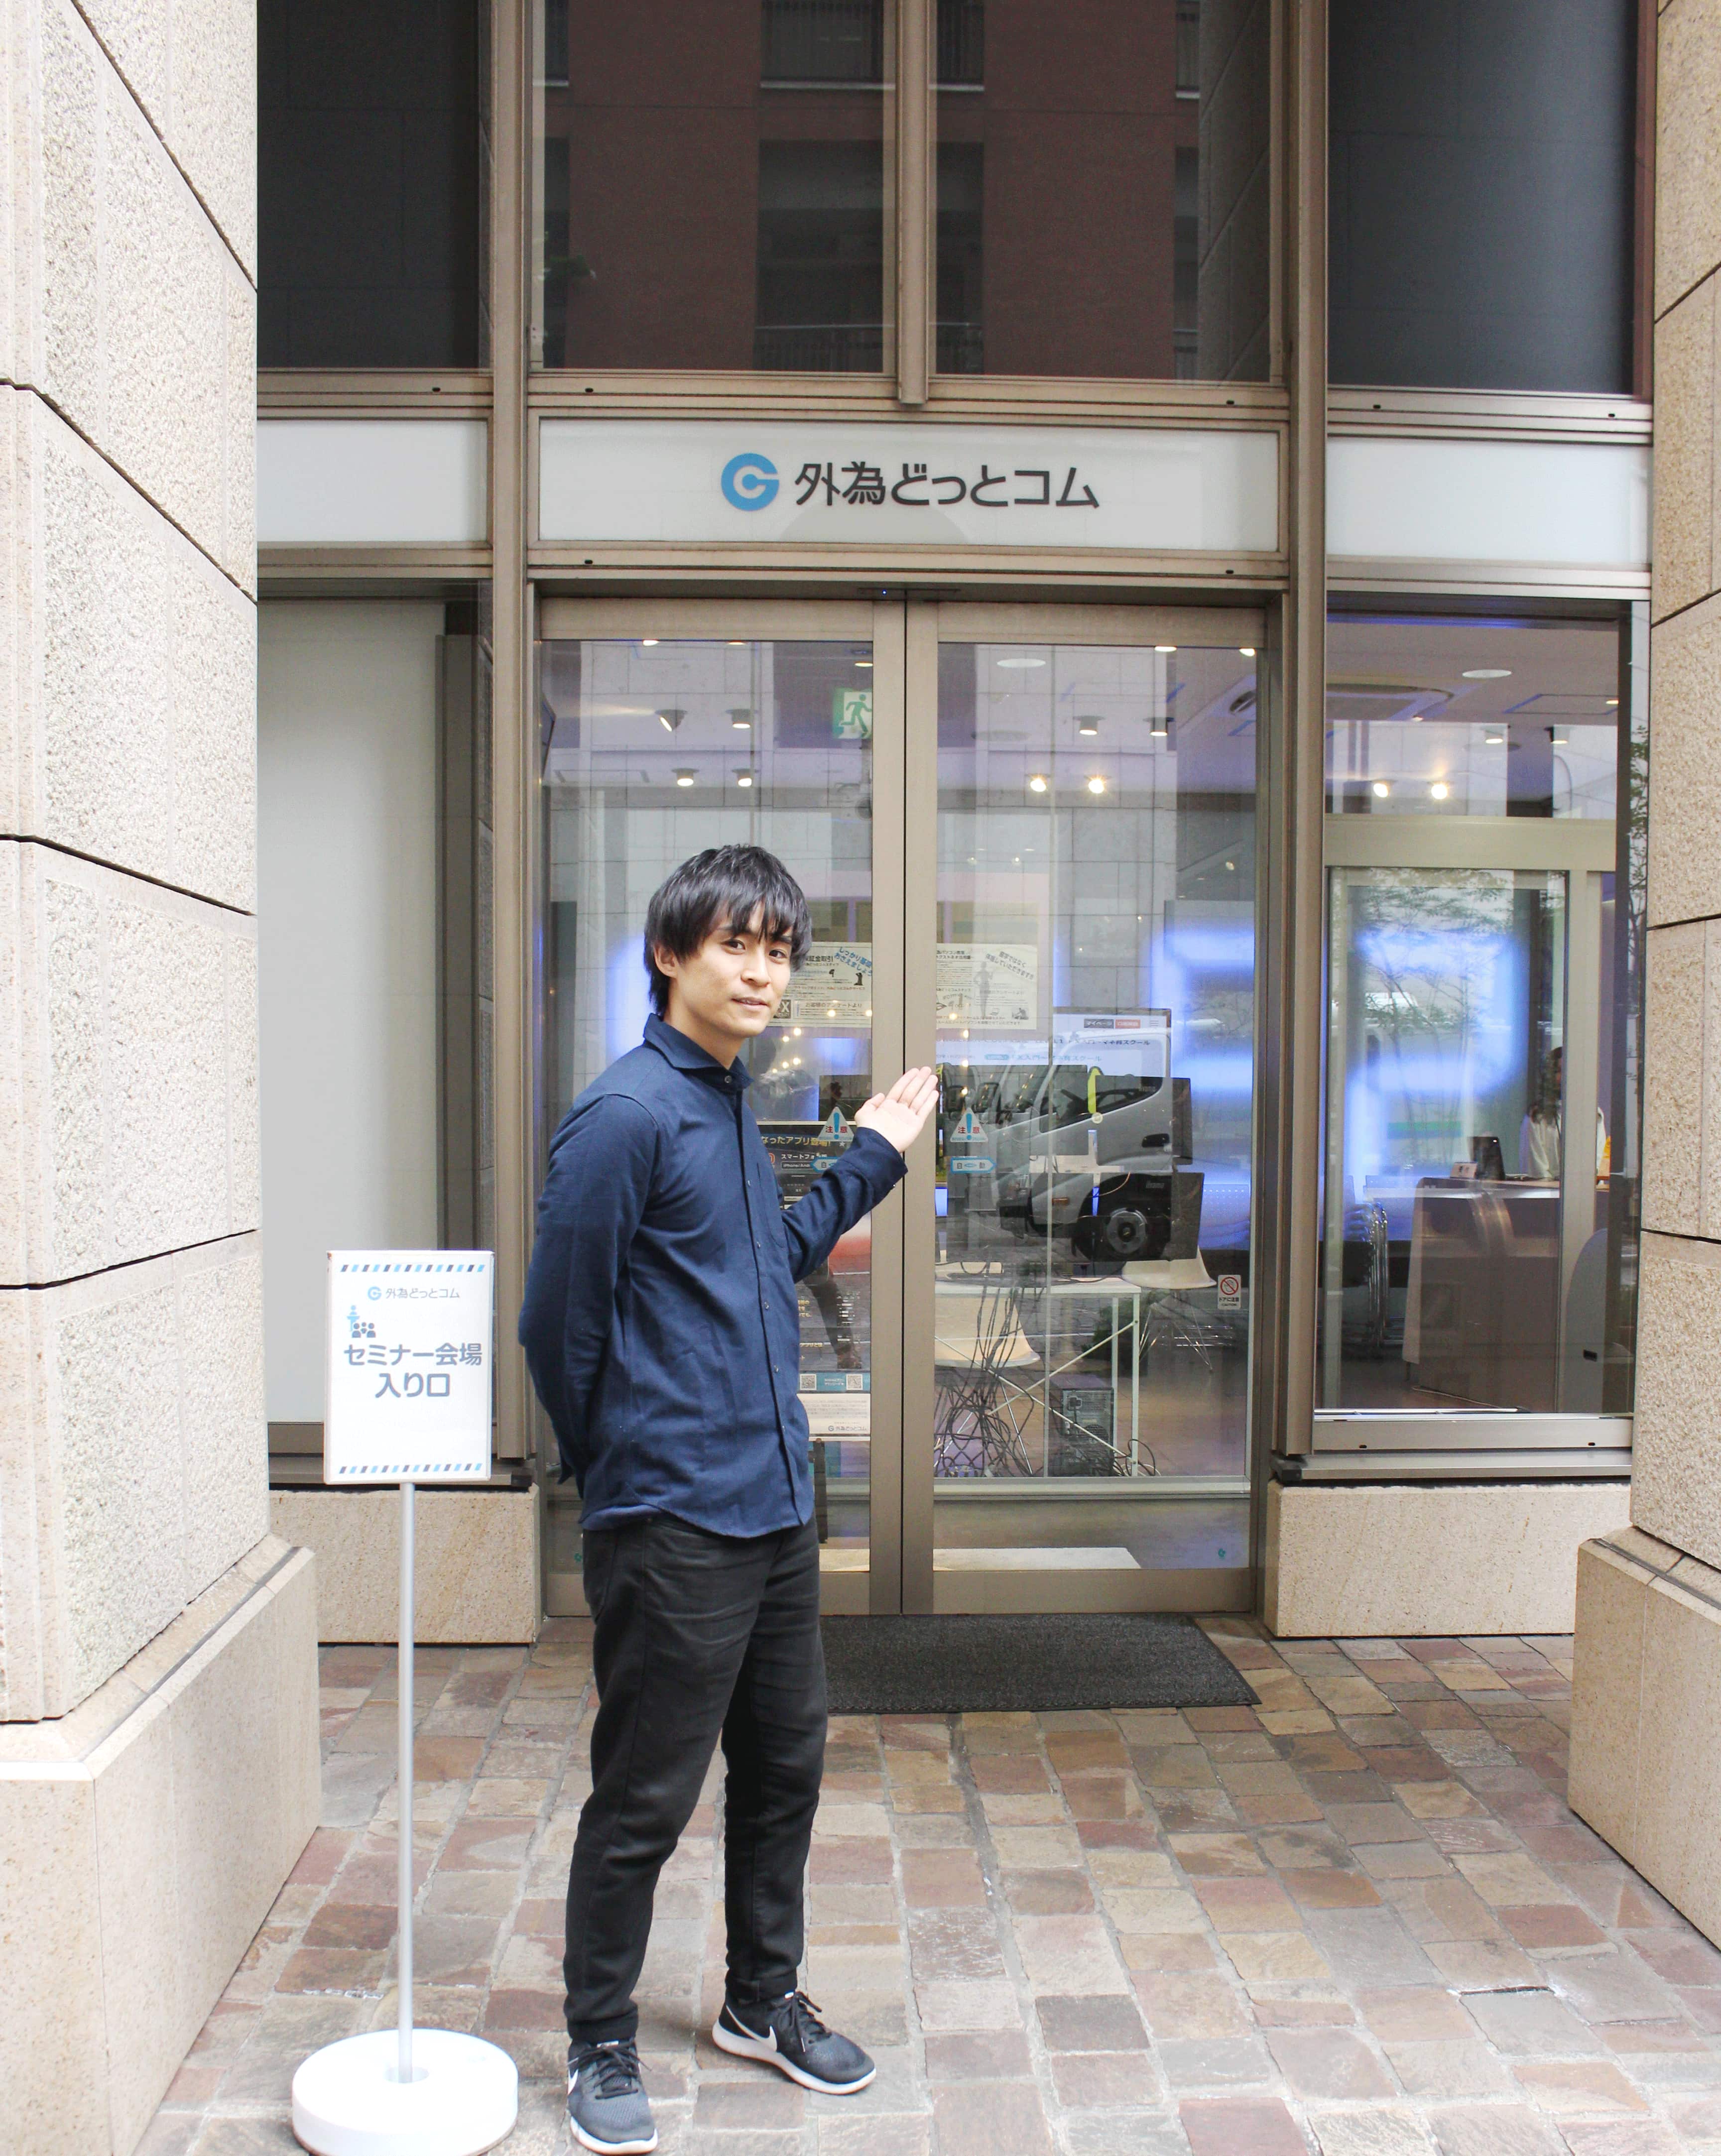 駿太さんが外コムさんの会社を指している写真